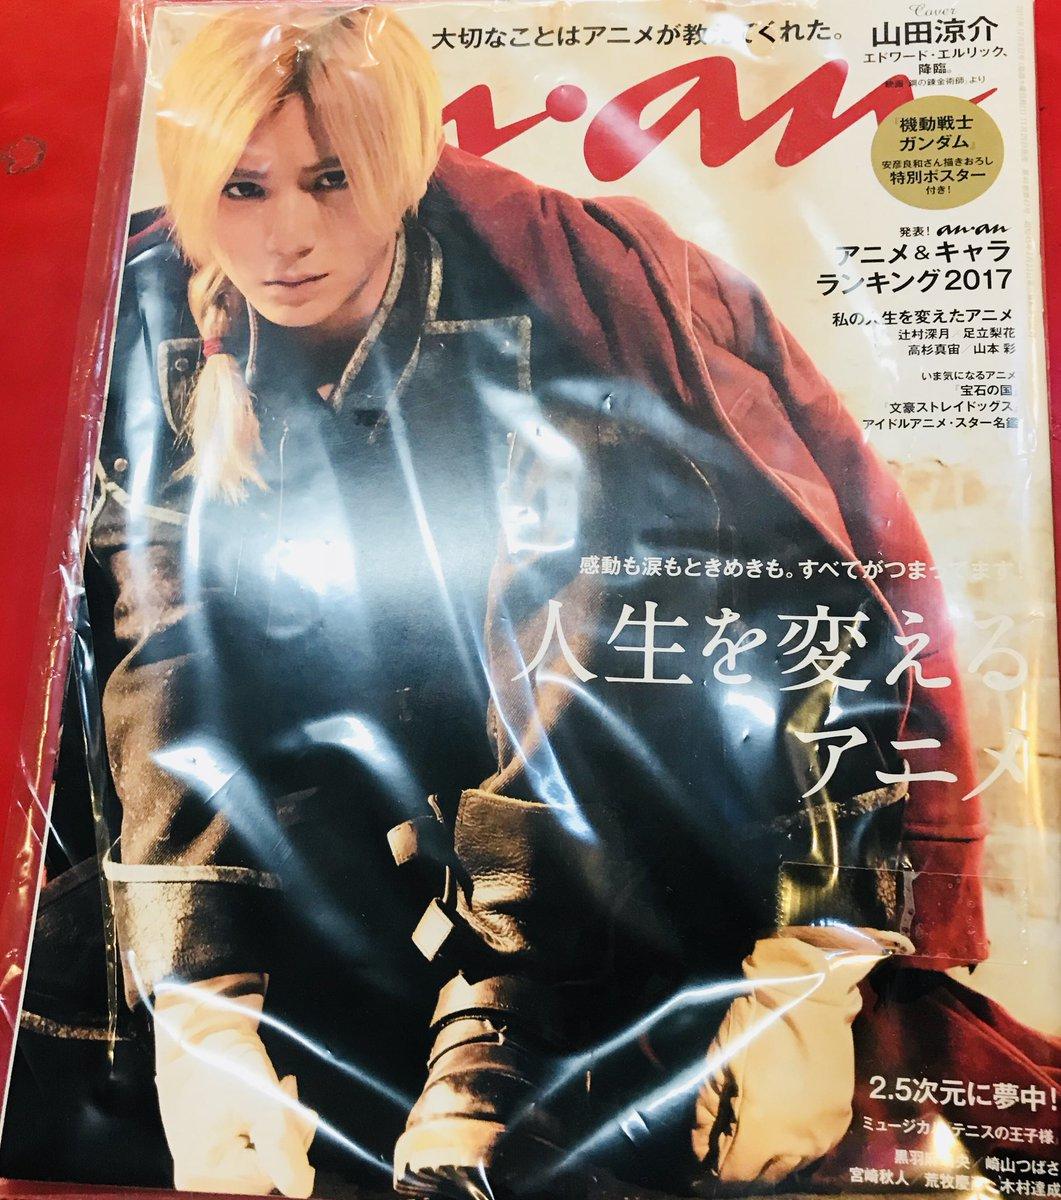 まんだらけ グランドカオス 男性アイドル Hey Say Jumpの山田涼介くん出演映画のポスター 雑誌が入荷しました